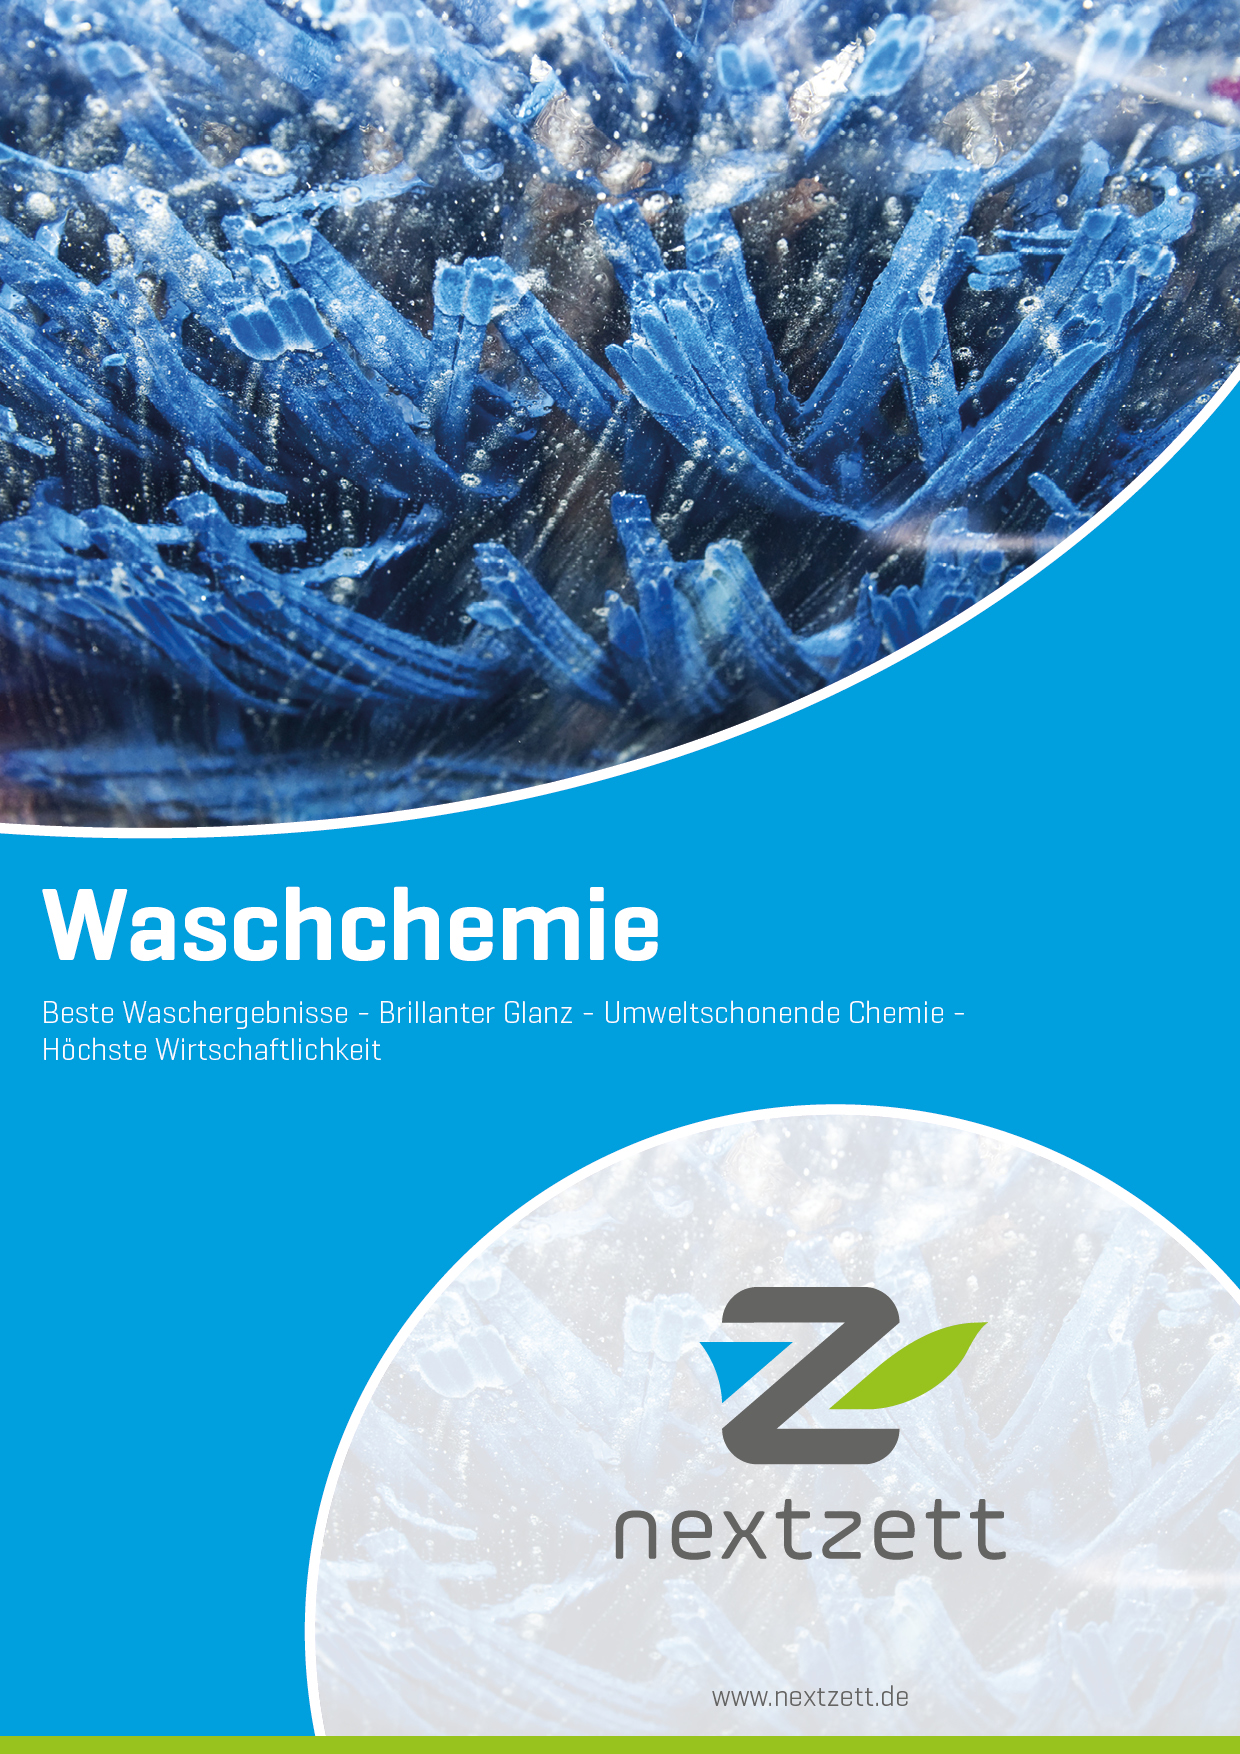 Nextzett Katalog - Waschchemie